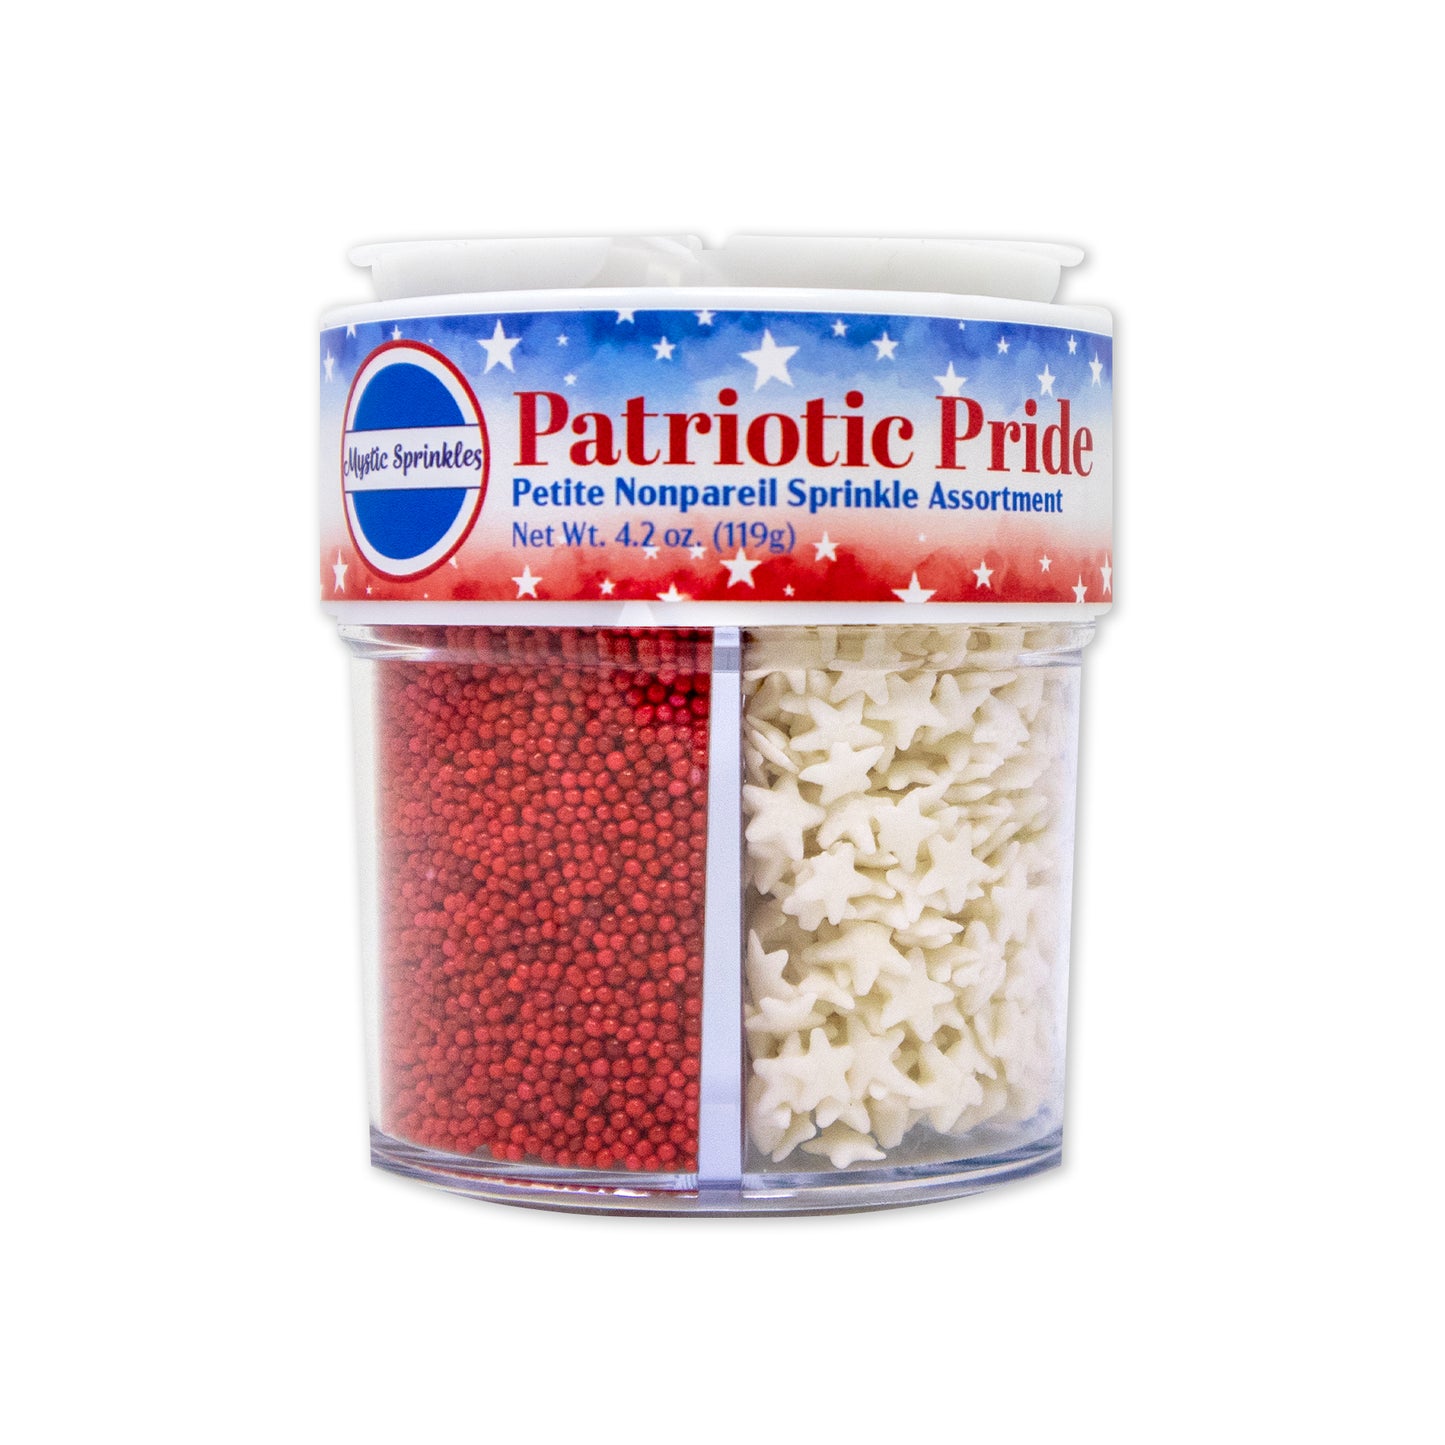 Patriotic Pride Nonpareil Petite Sprinkle Assortment 4.2oz